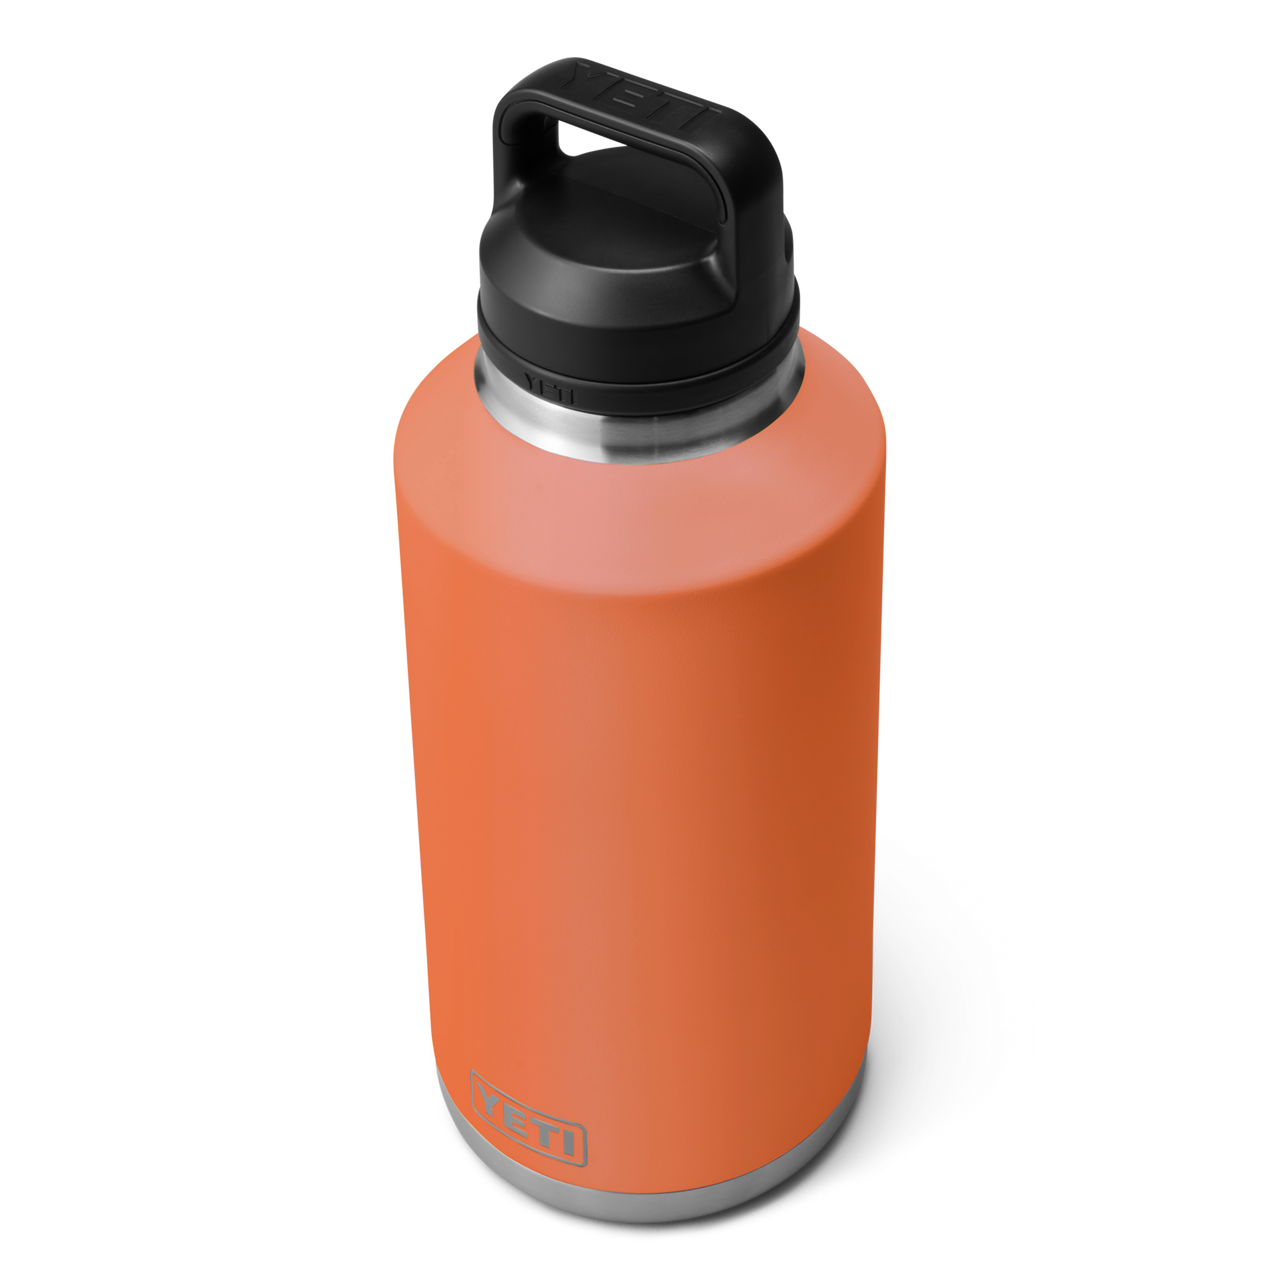 Solid State Orange Yeti Rambler Bottle 64oz Skin